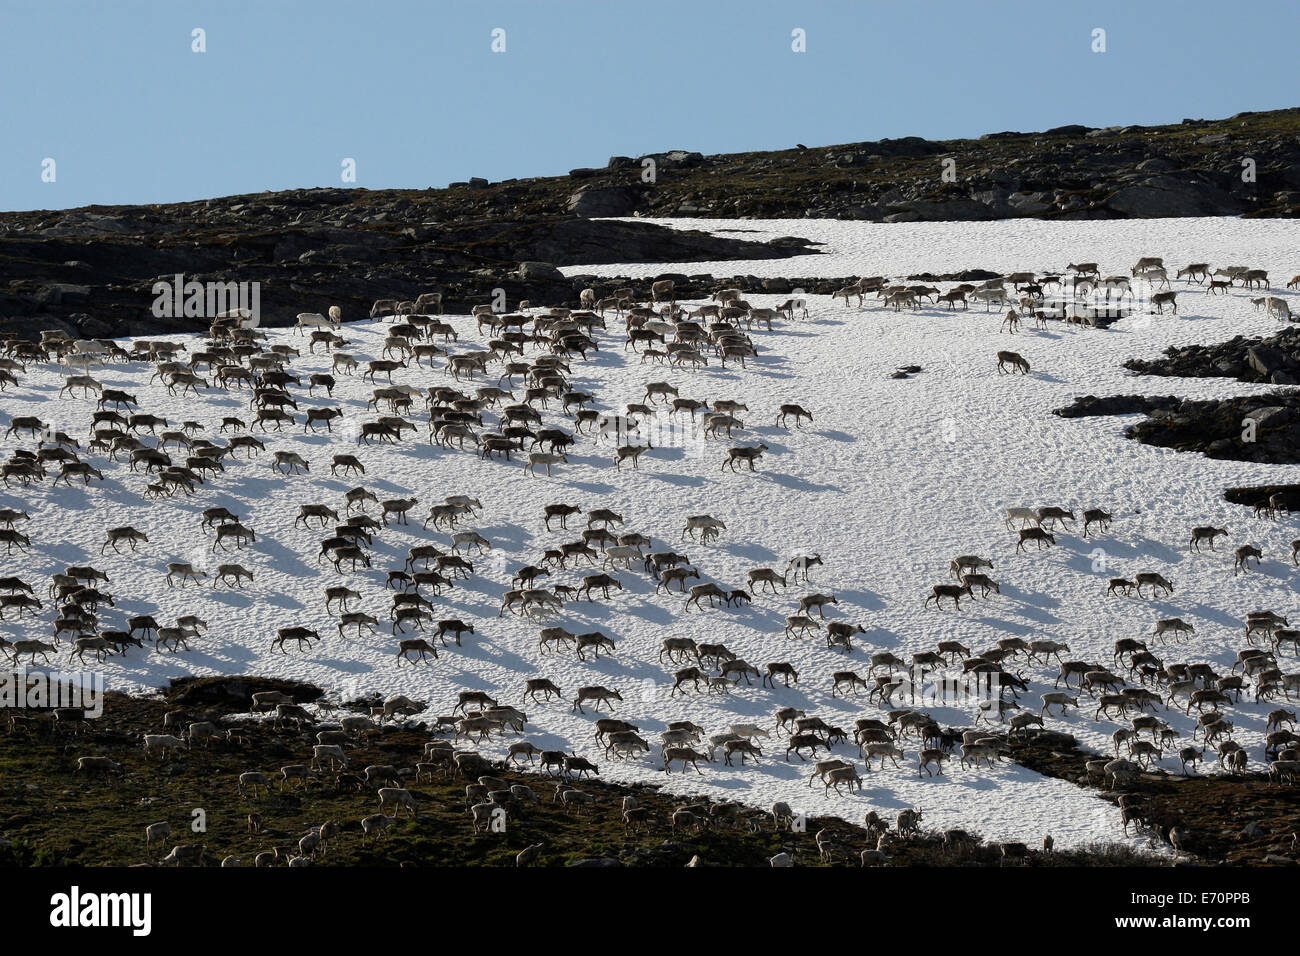 Reindeer (Rangifer tarandus) crossing a snowfield, North Norway, Norway Stock Photo